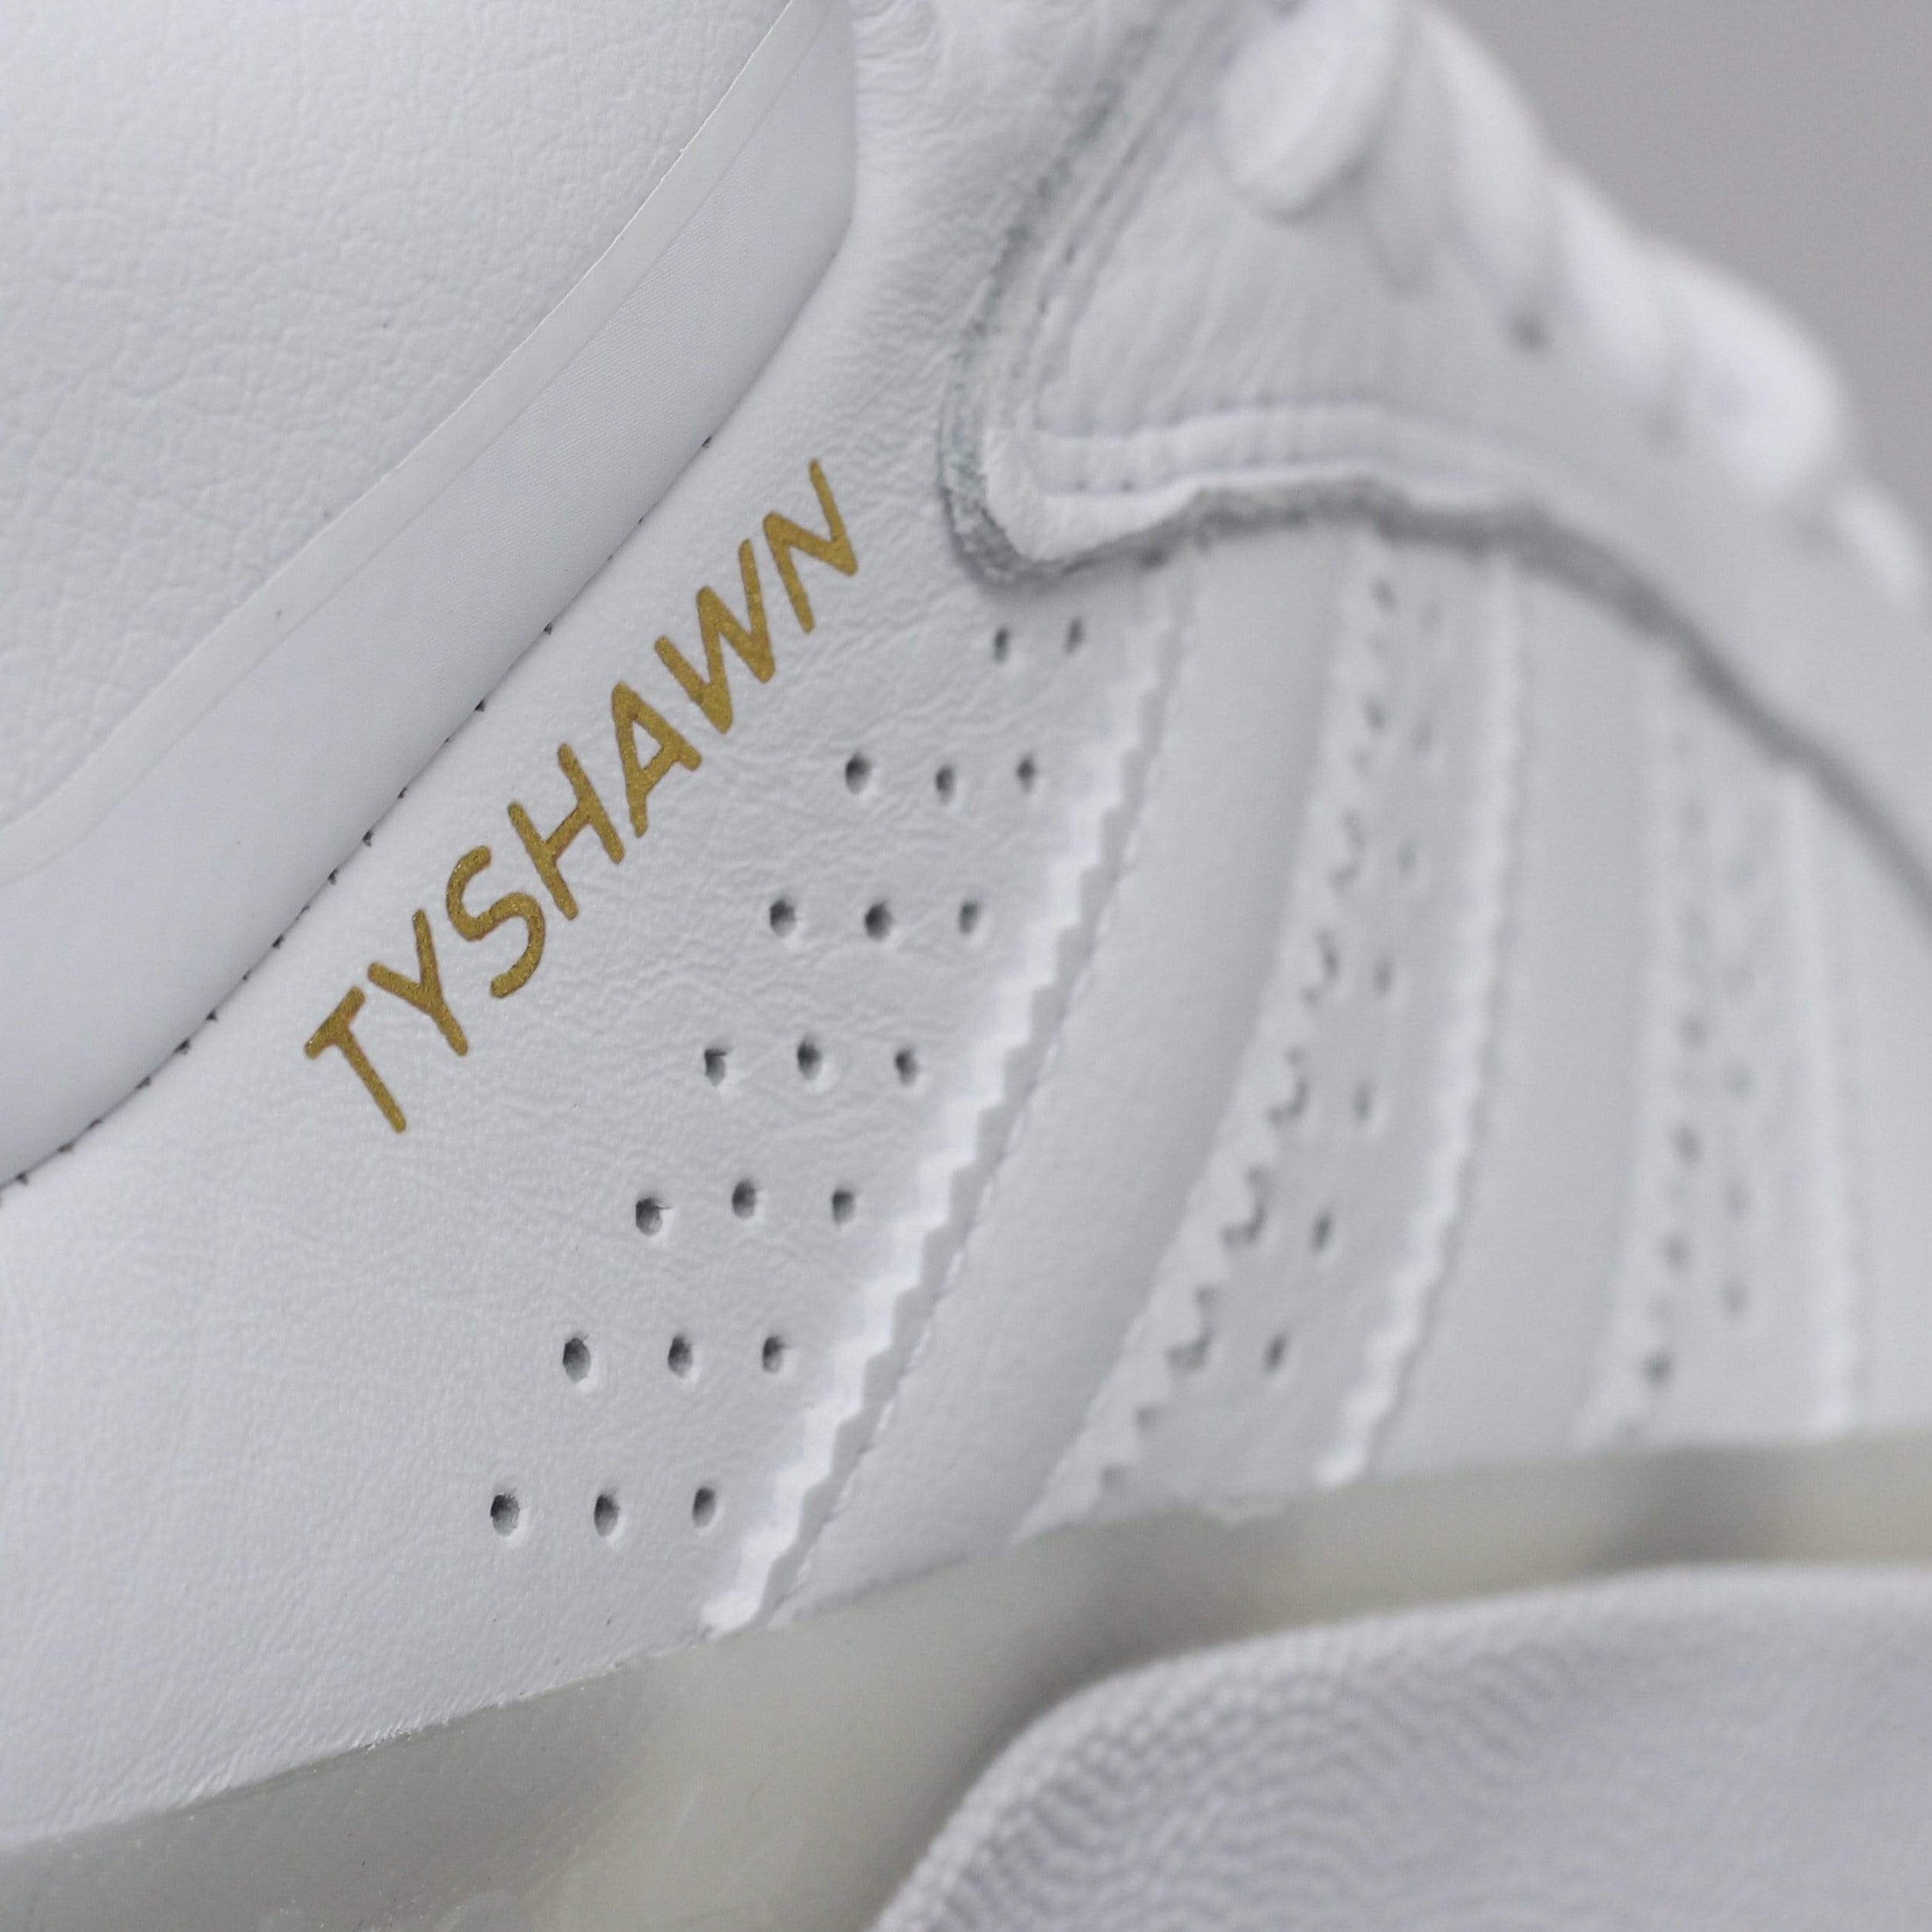 adidas Tyshawn Shoes Footwear White / Footwear White / Footwear White